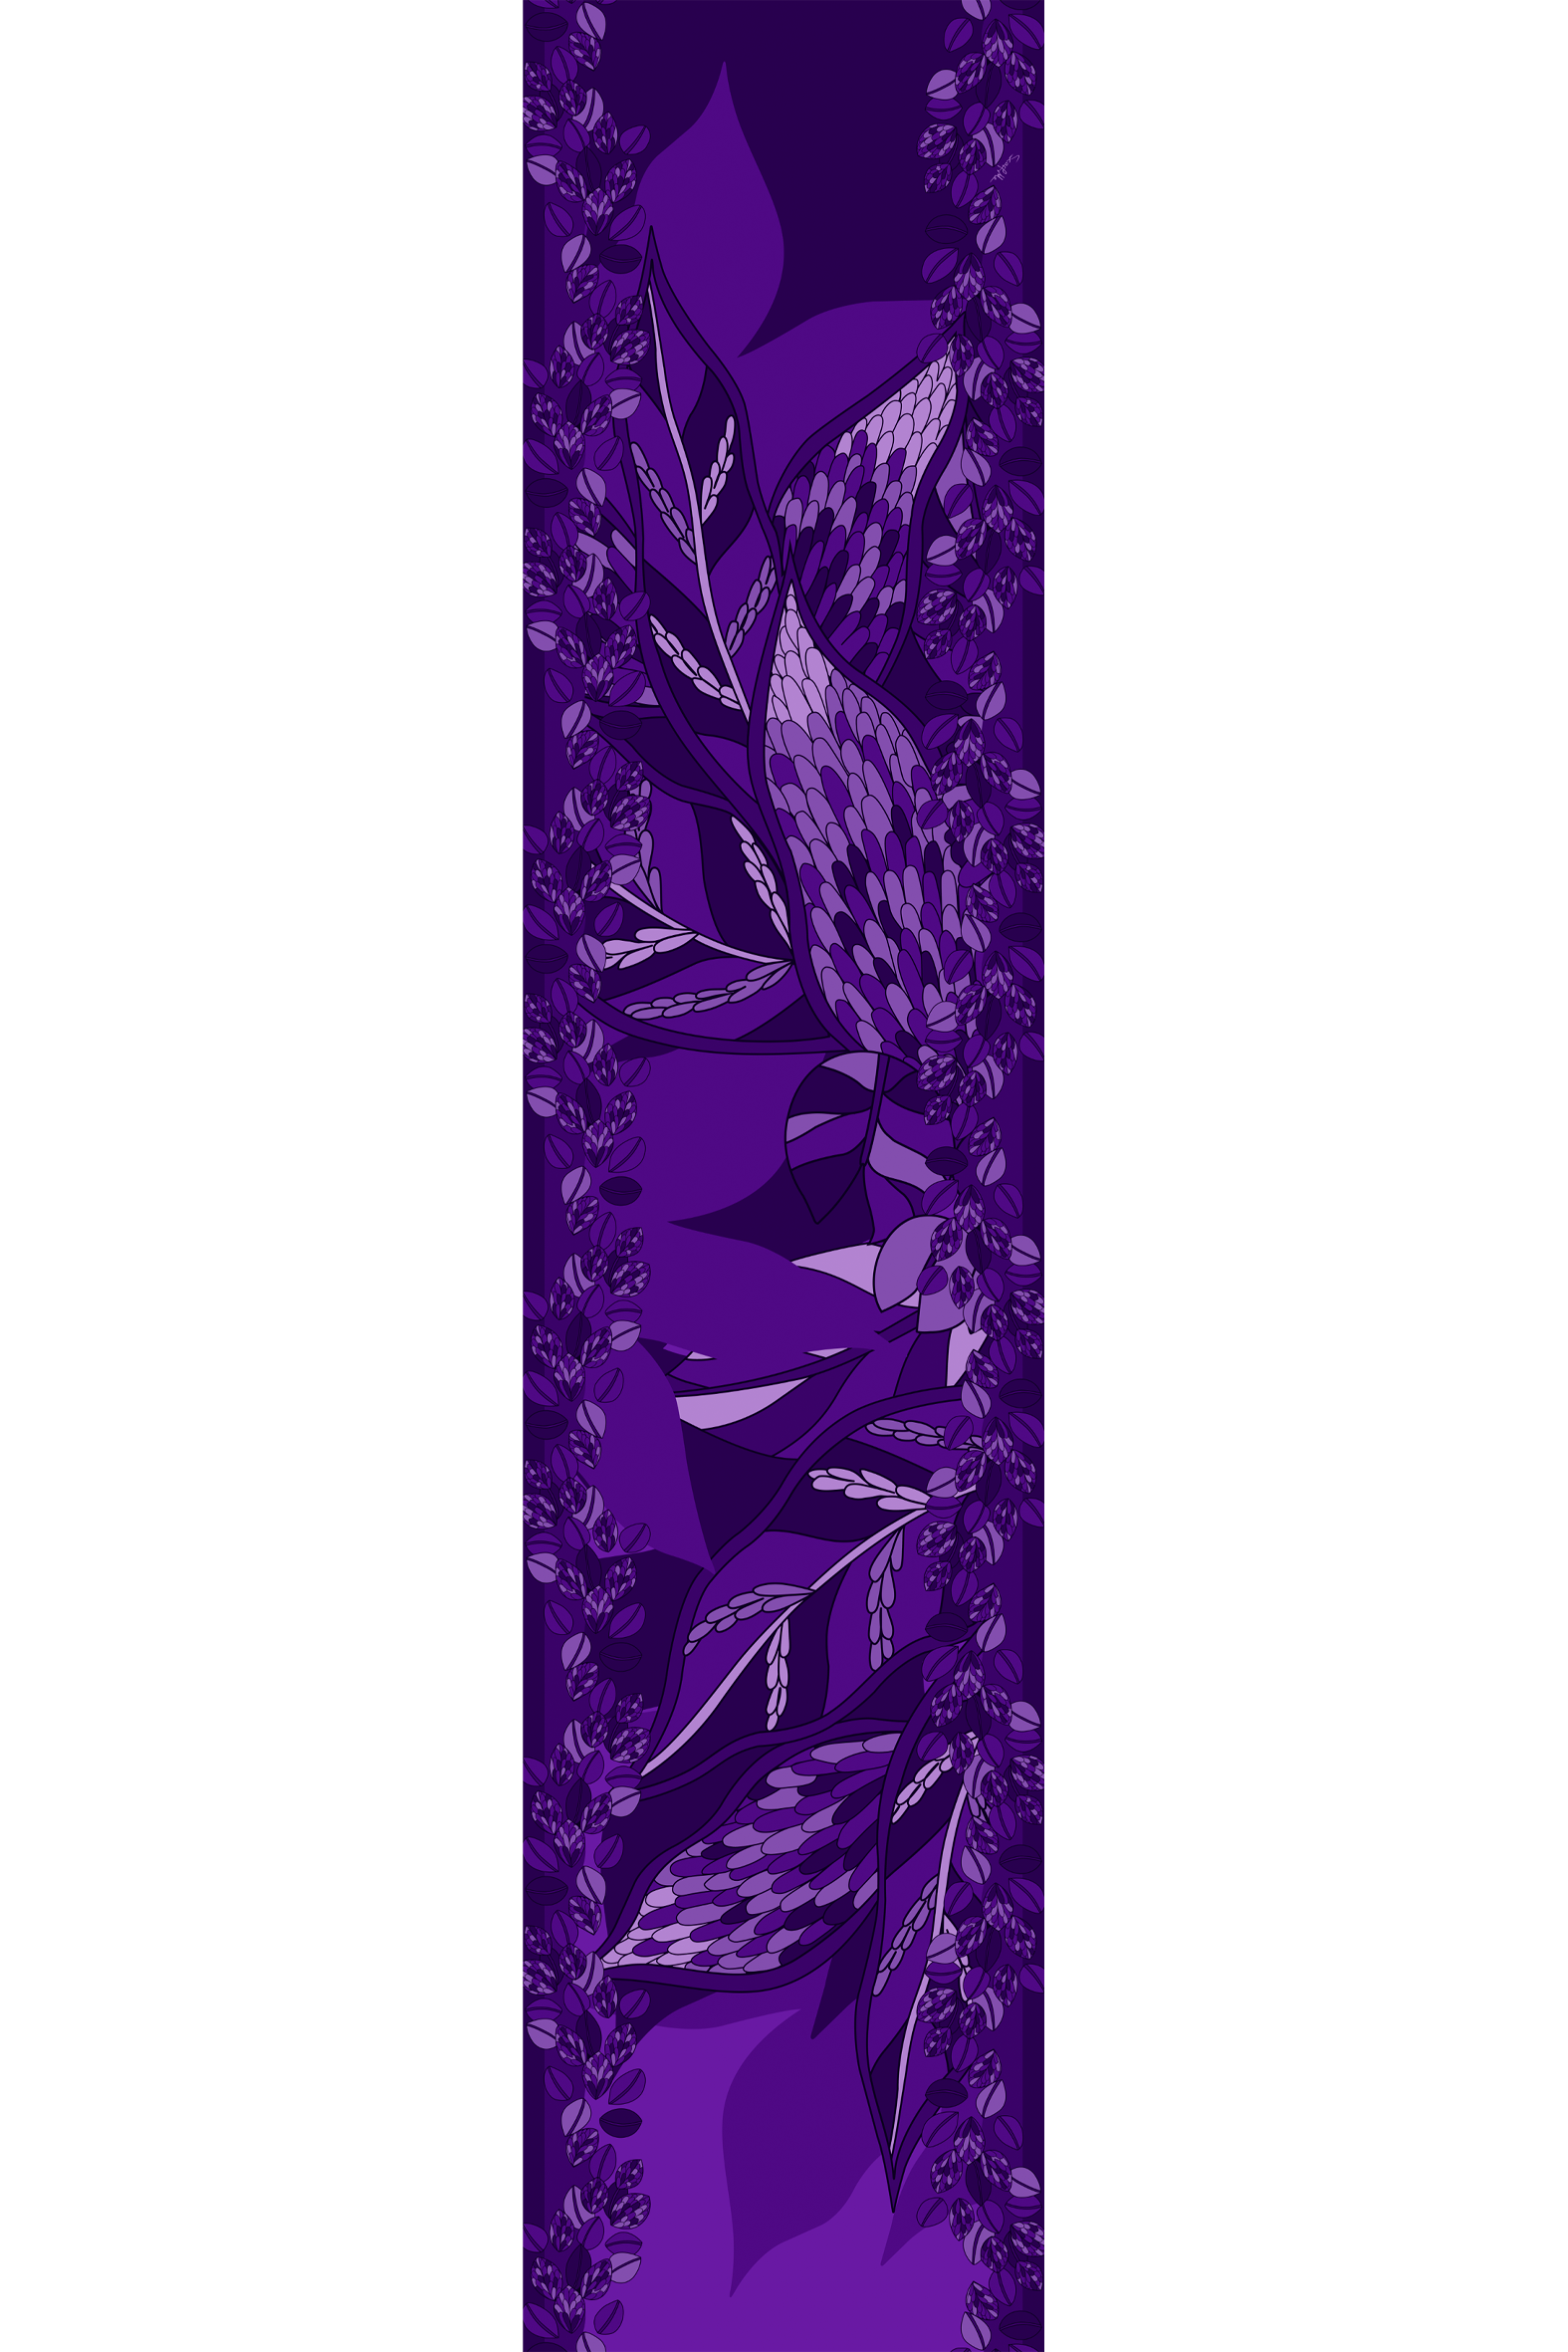 Echarpe Ramos de púrpura roxo em mousseline de poliéster | 45X210cm